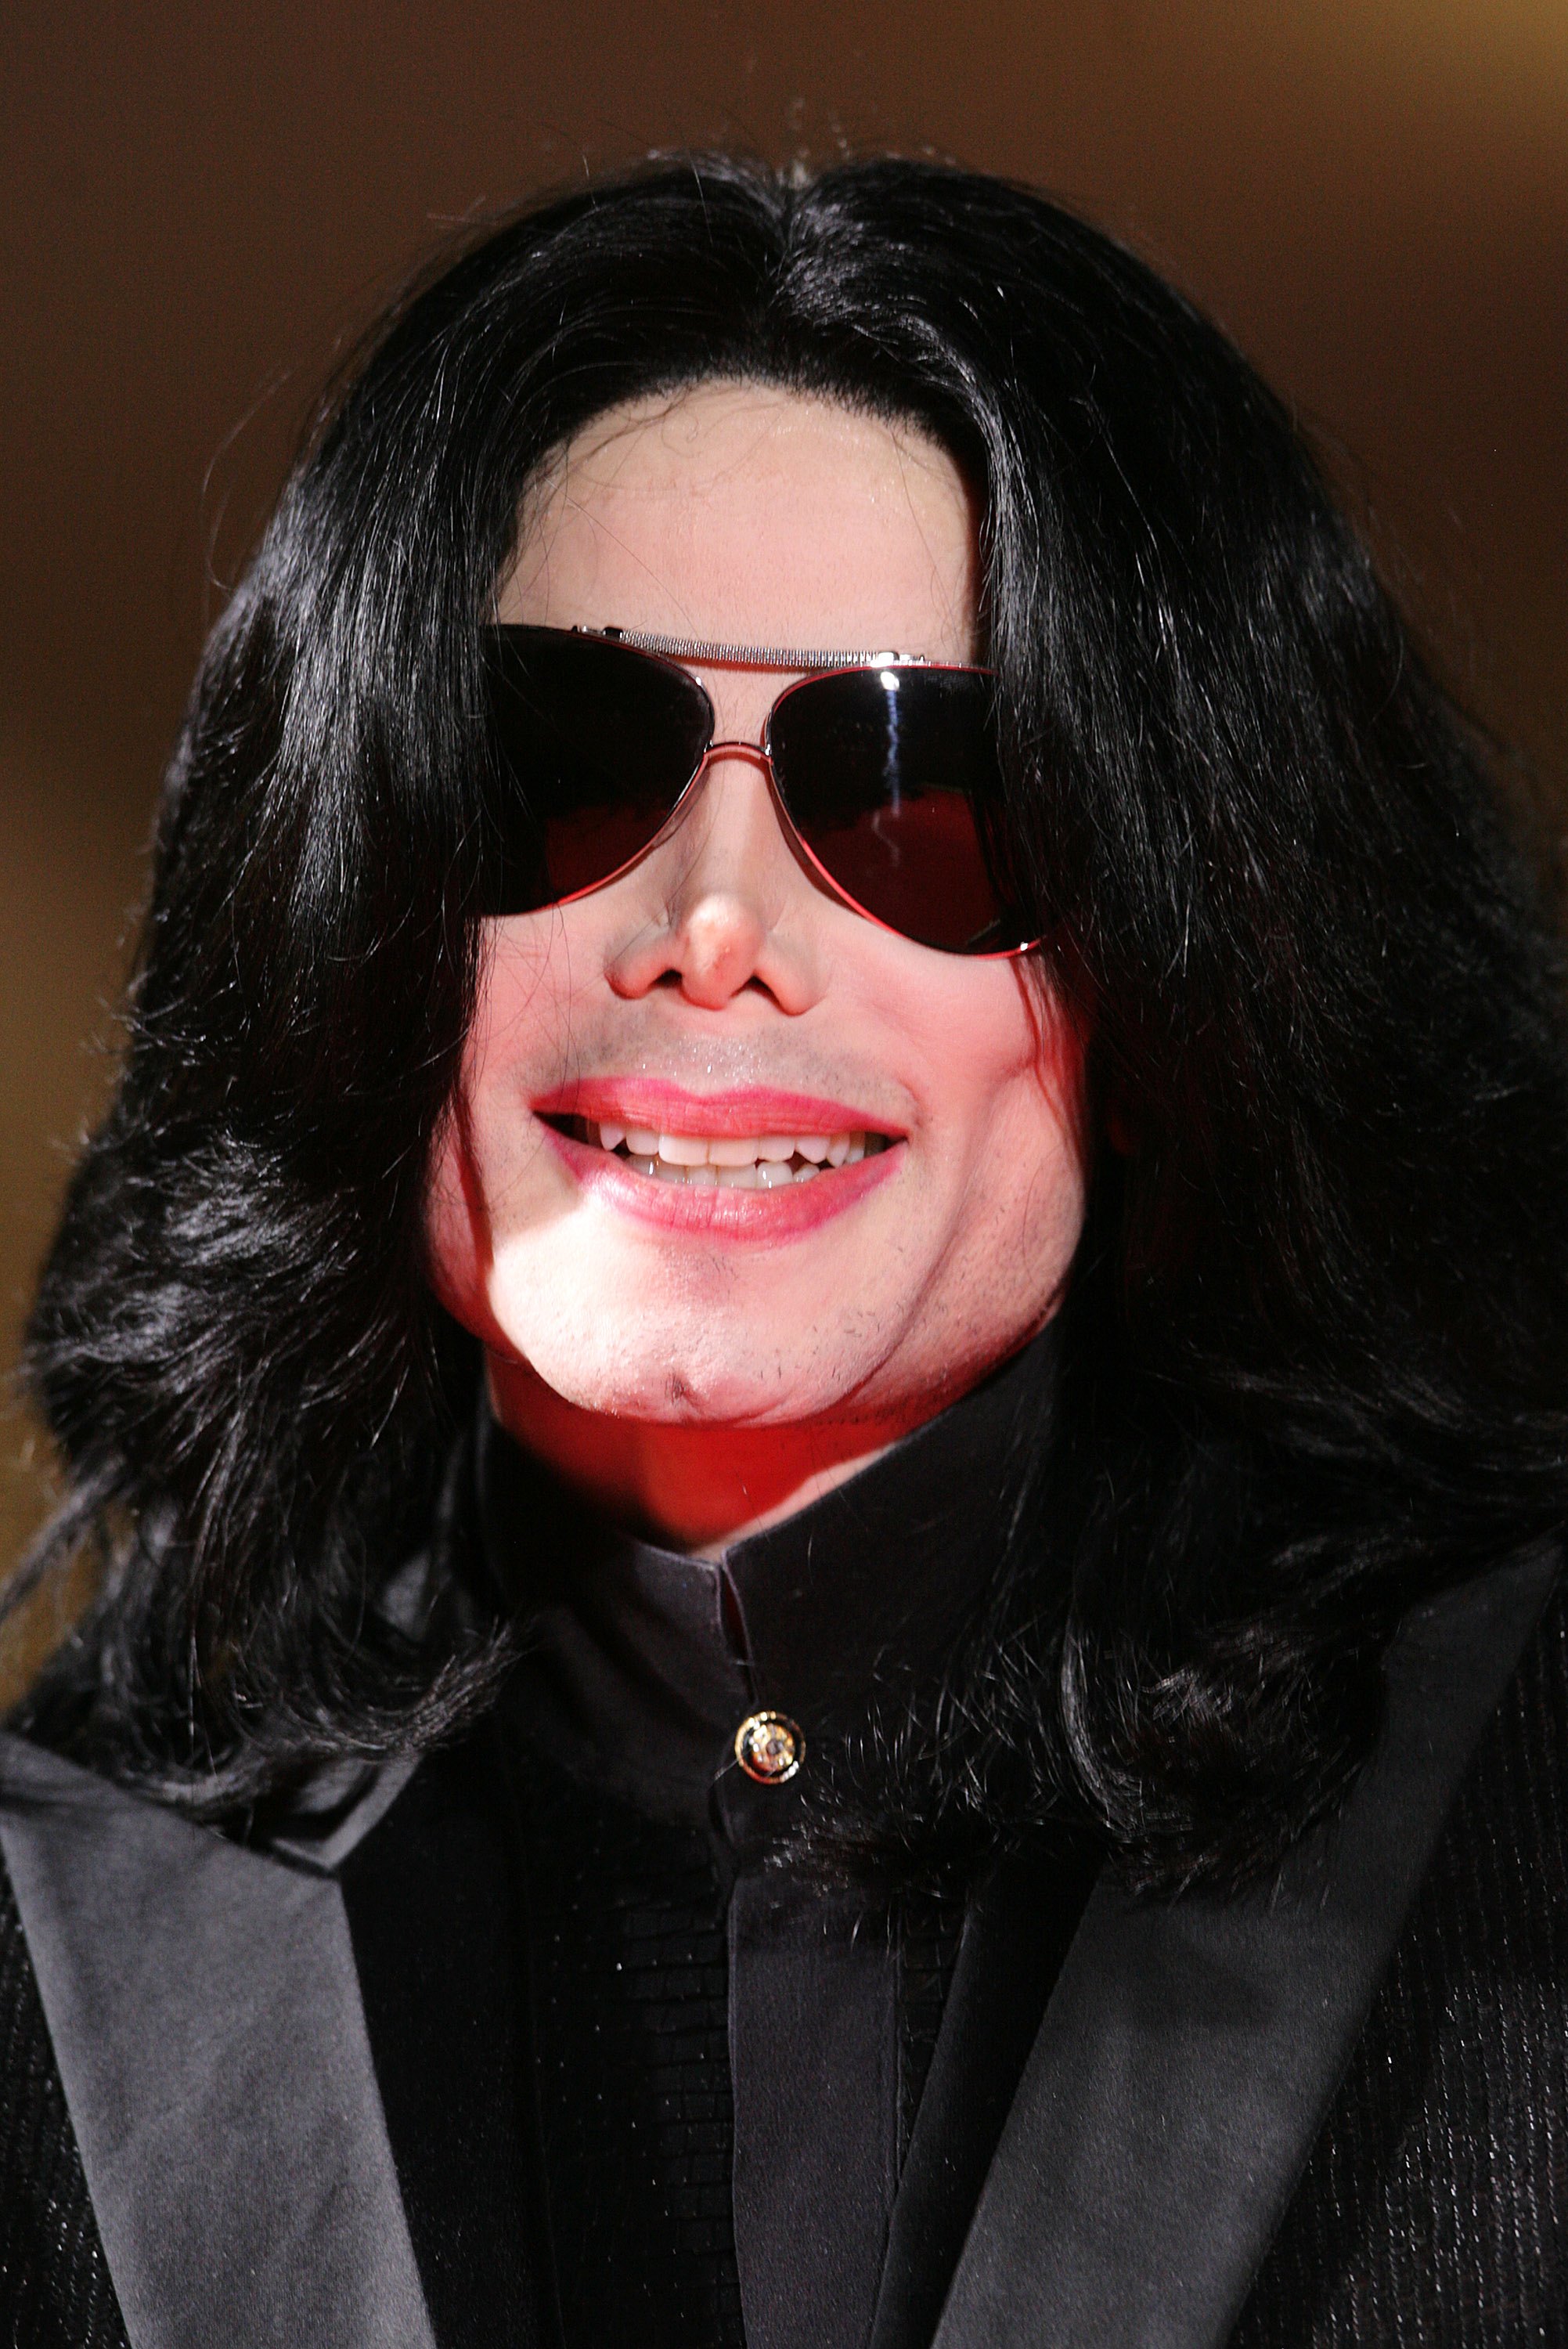 Michael Jackson arrive aux World Music Awards 2006 le 15 novembre 2006 à Londres. | Source : Getty Images